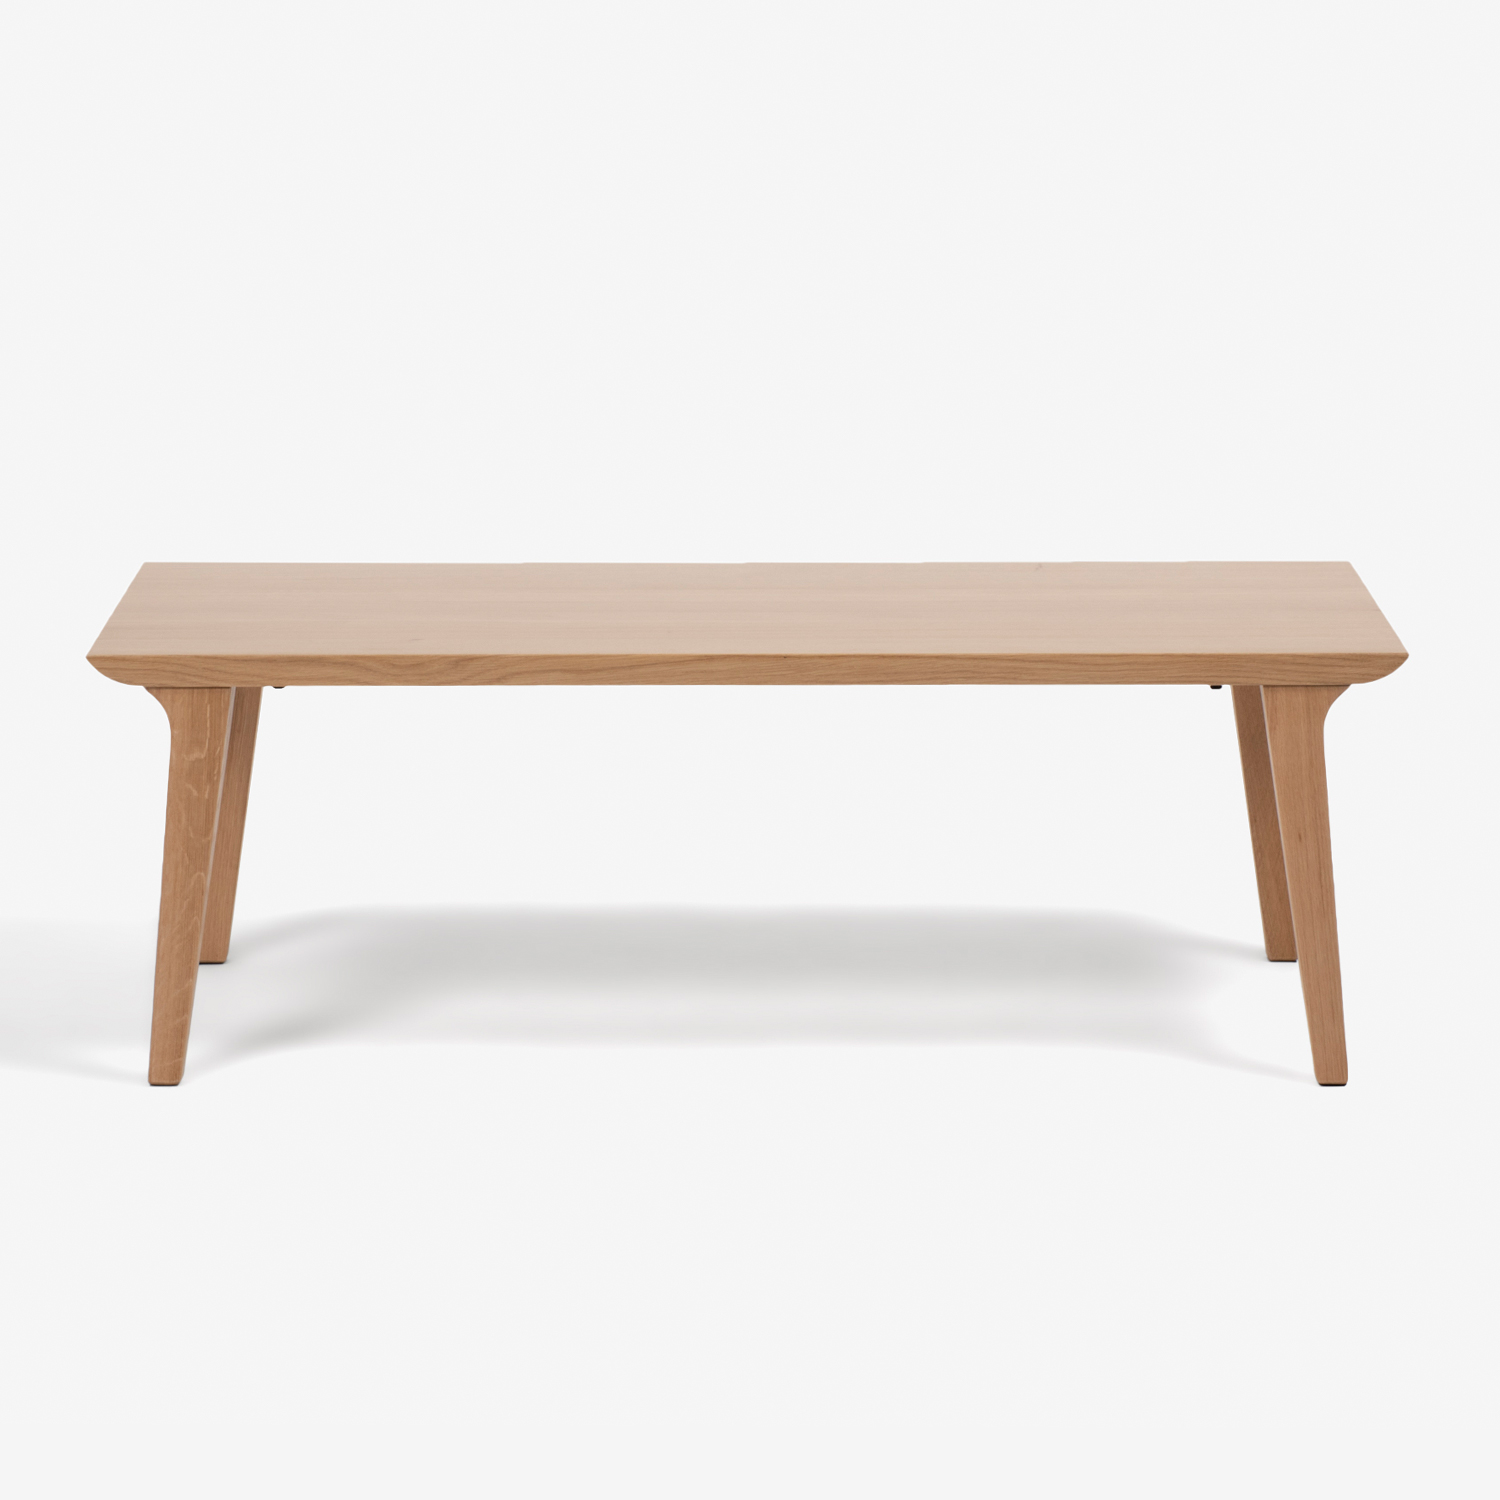 センターテーブル「ハイヒール」幅120cm オーク材 ホワイトオーク色【決算セールのため40%OFF】